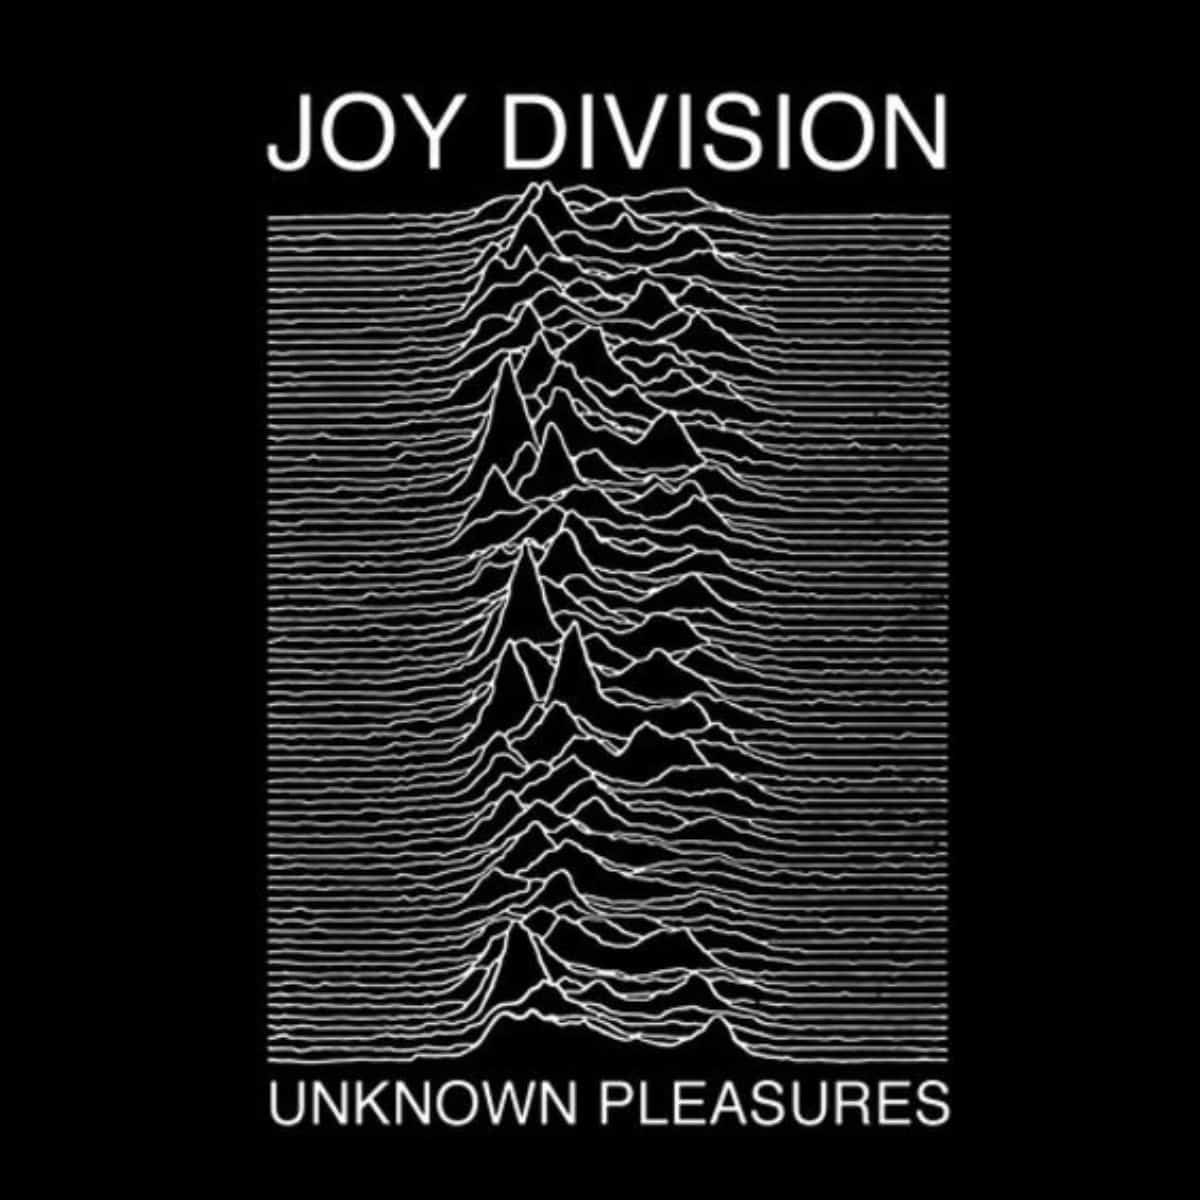 joy division album cover